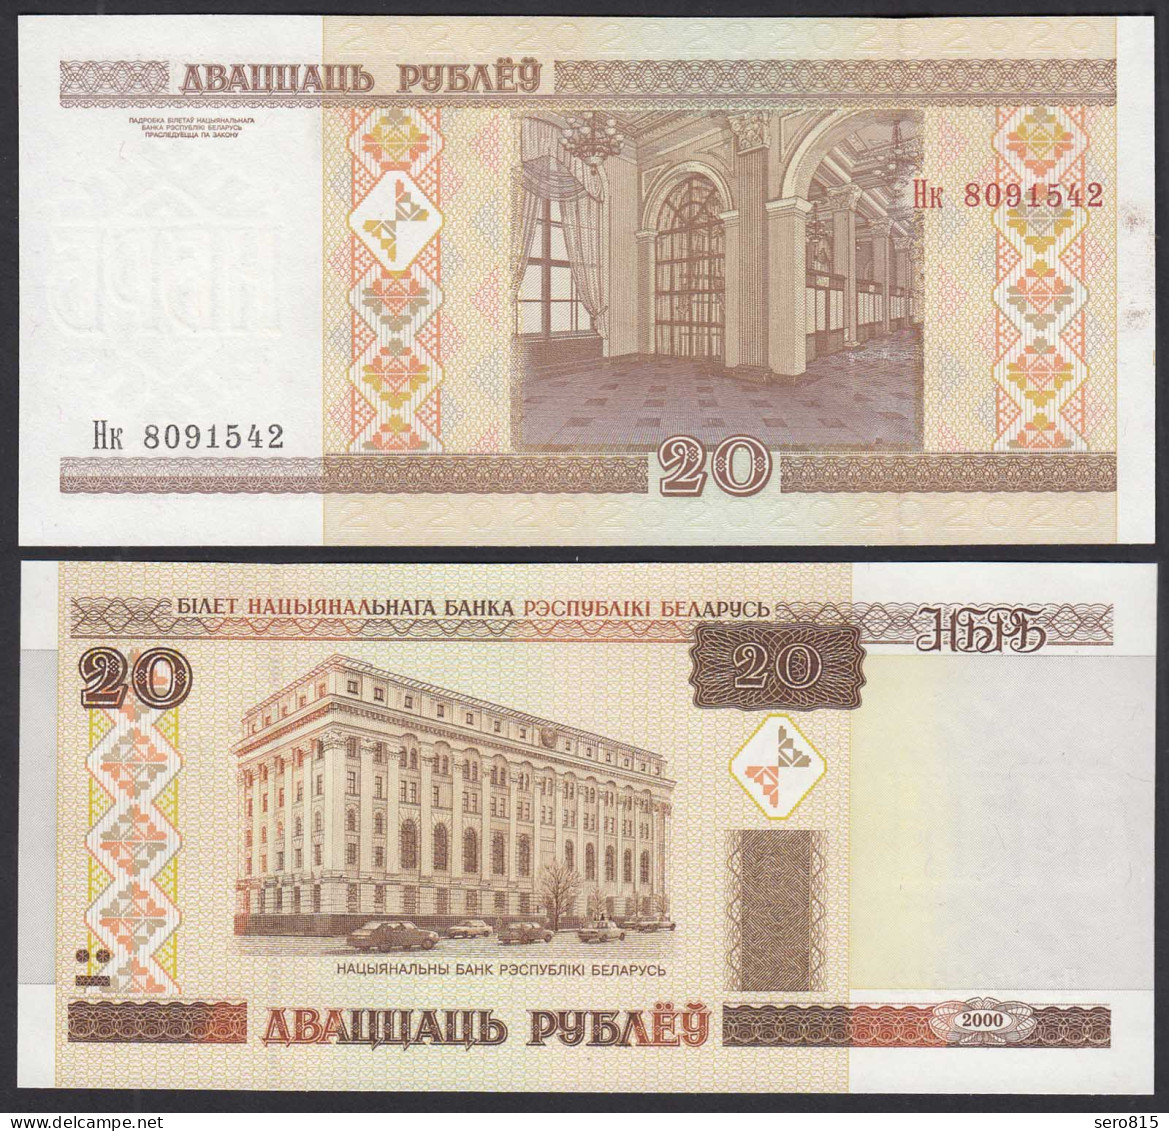 Weißrussland - Belarus 20 Rubel 2000 UNC (1) Pick 24  (30166 - Other - Europe